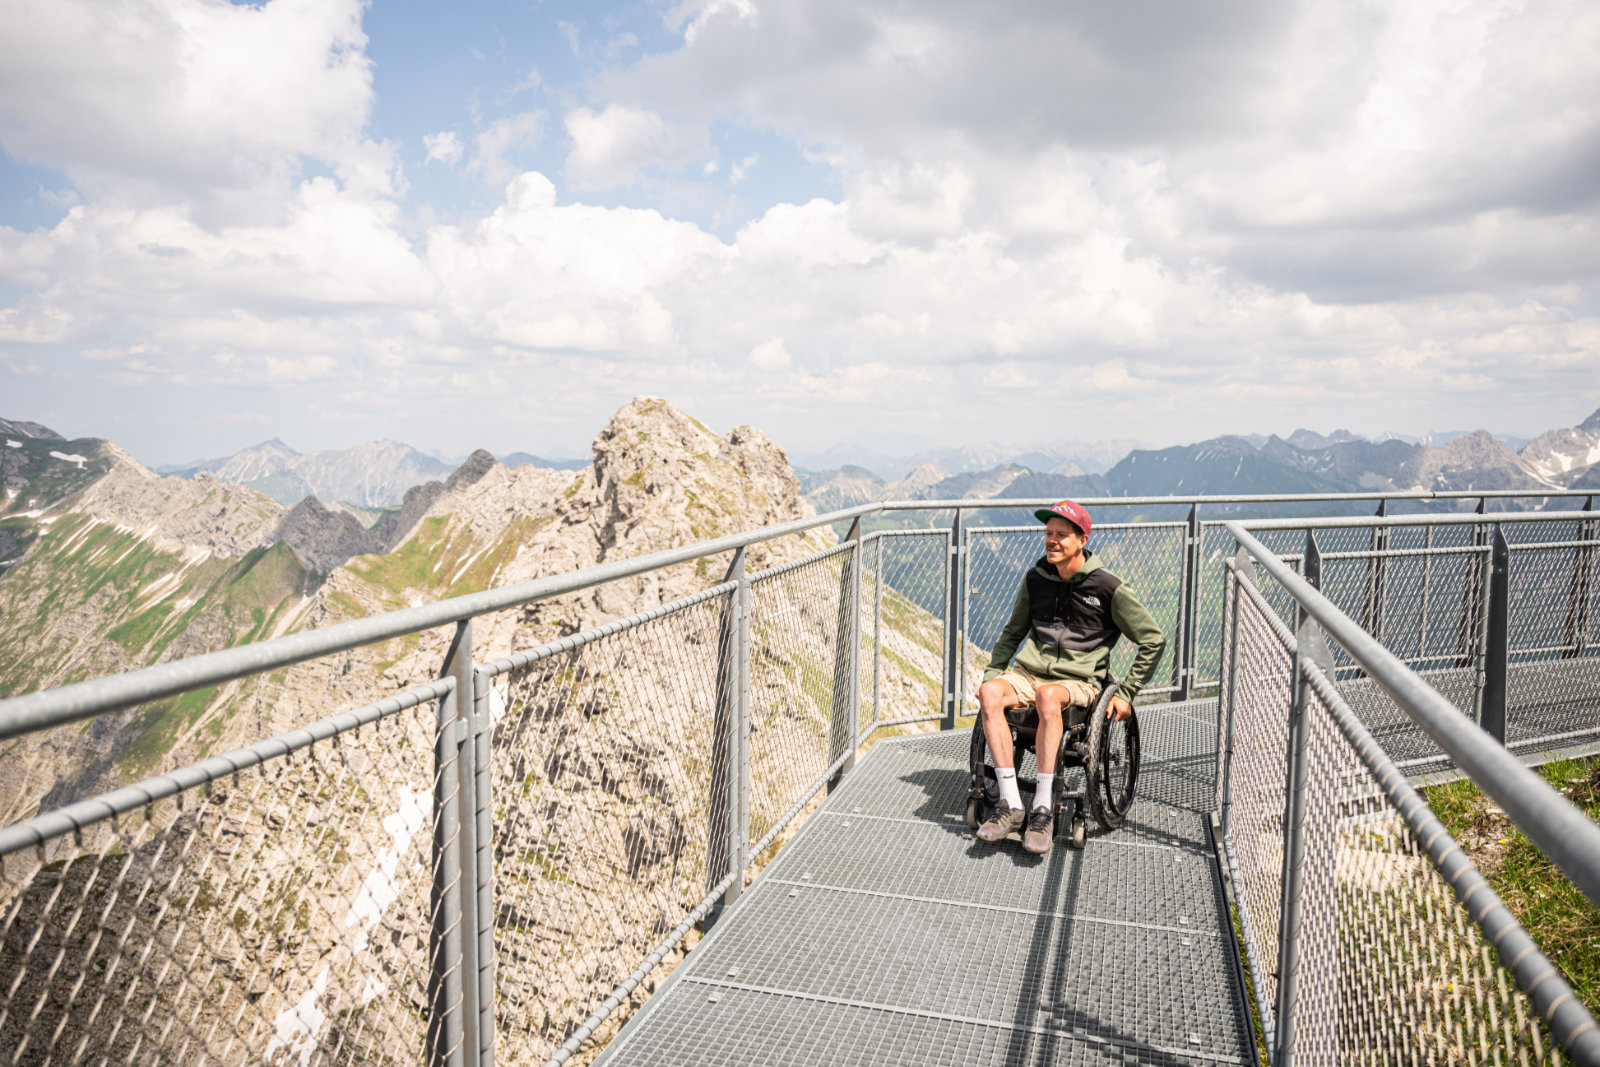 Rollstuhlfahrer auf einem Metallsteg mit Aussicht auf Berge